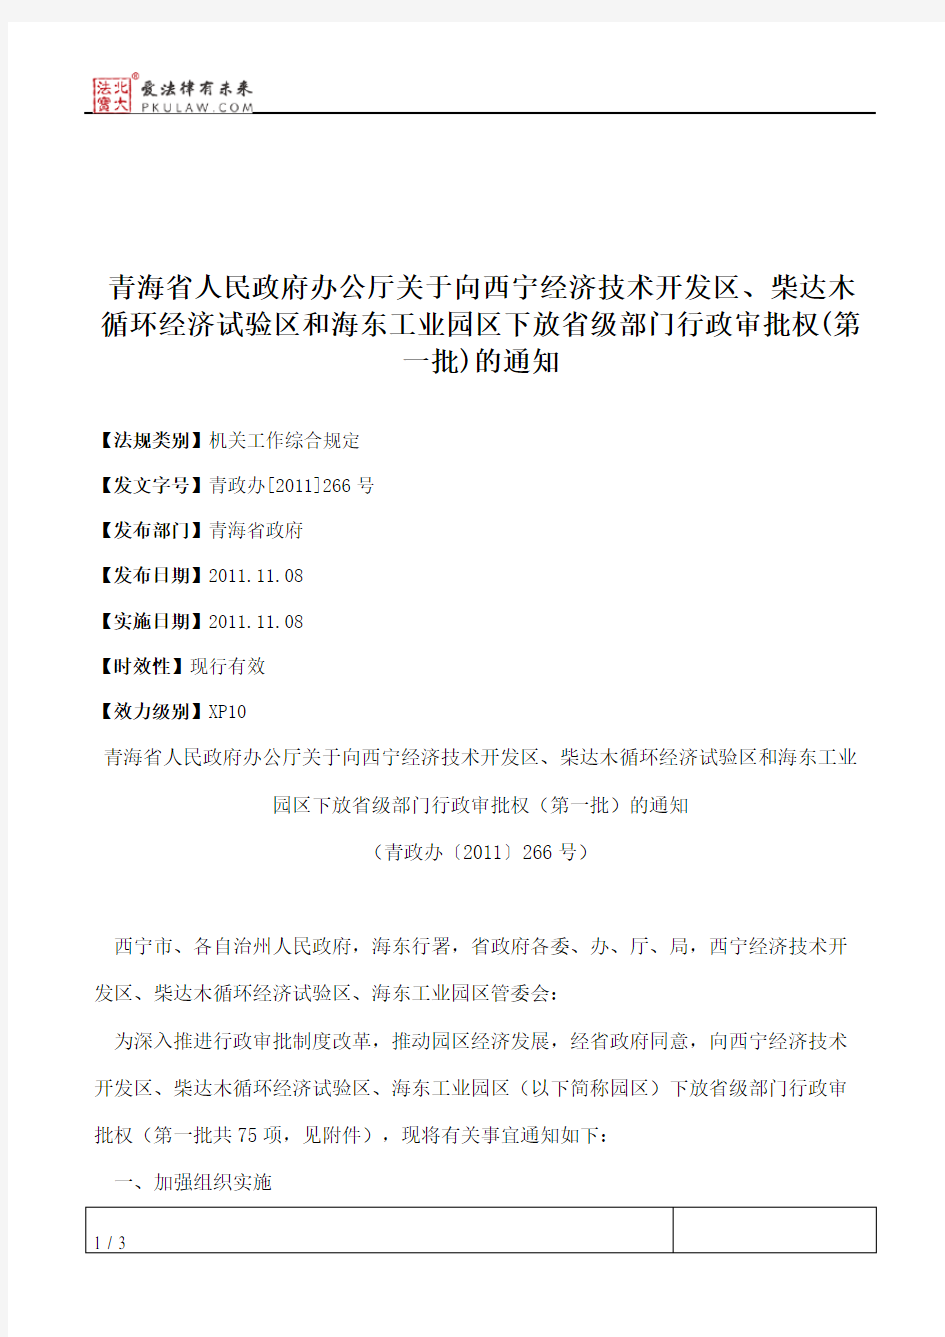 青海省人民政府办公厅关于向西宁经济技术开发区、柴达木循环经济